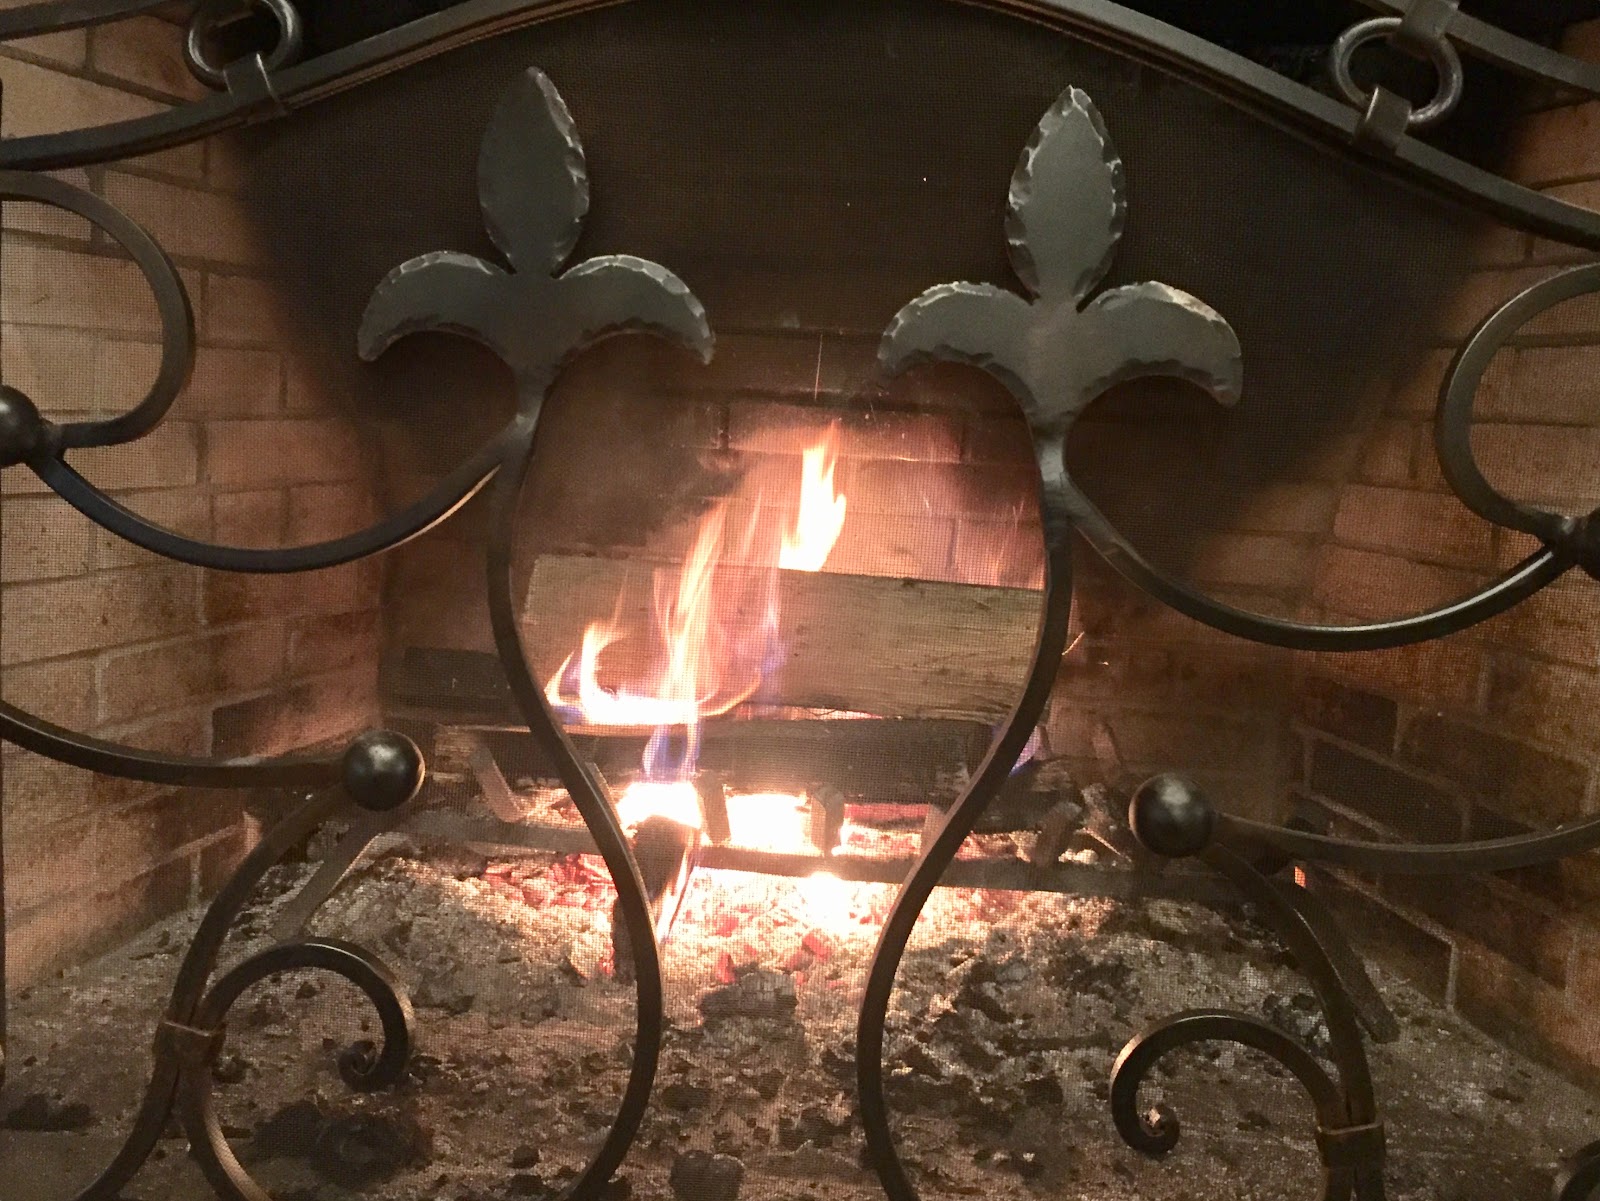 Burning Fireplace
